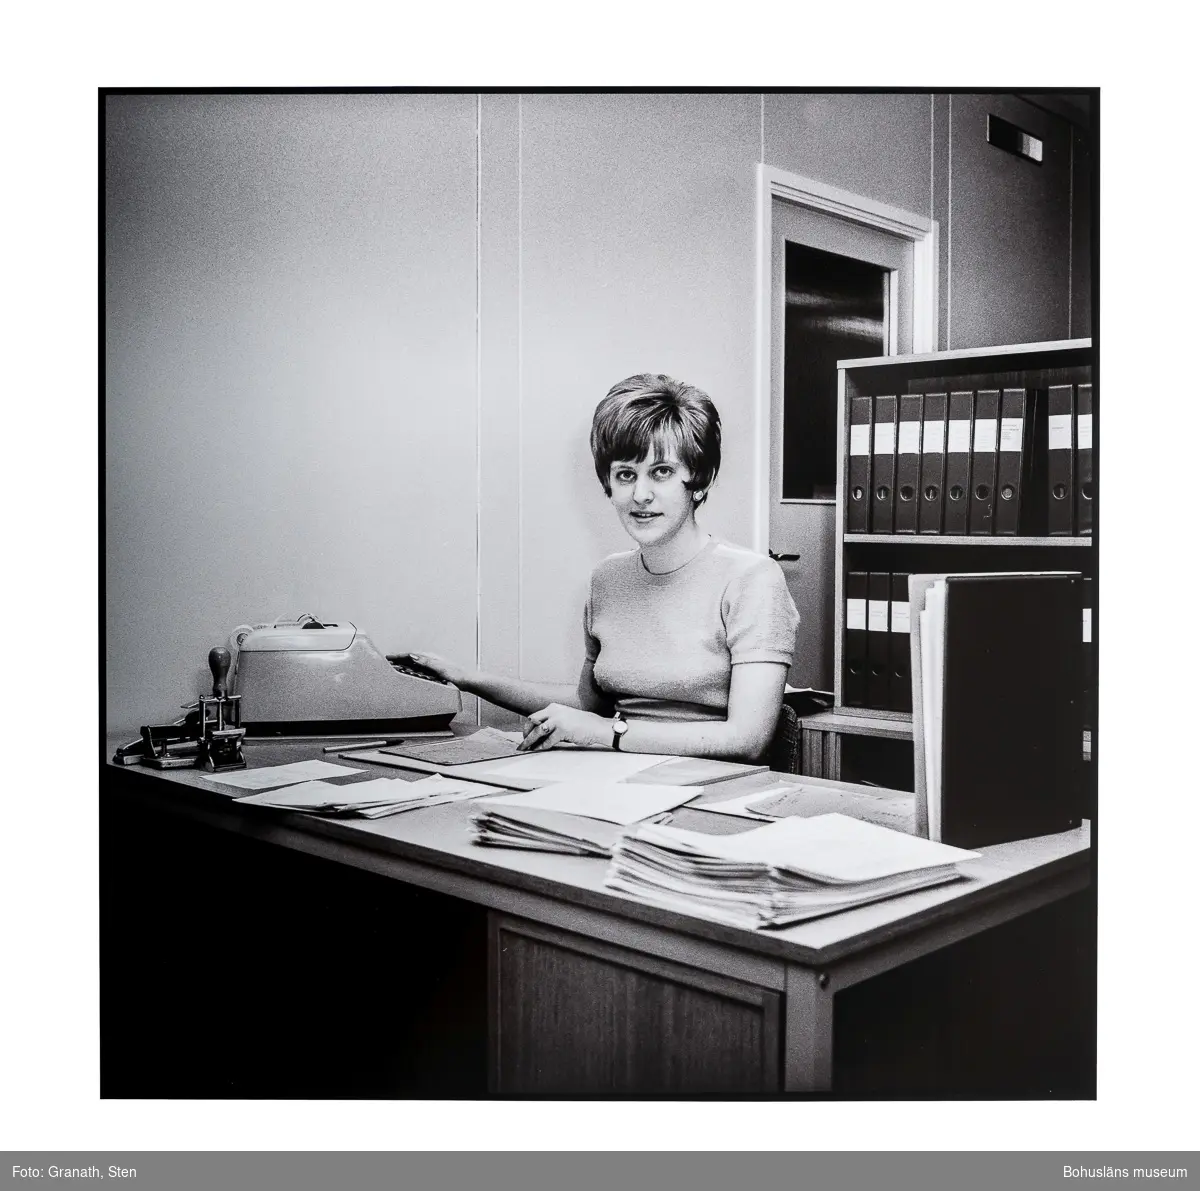 En kontorist på Domus sitter vid ett skrivbord och tittar mot betraktaren. En räknemaskin (eller skrivmaskin) står till höger på skrivbordet. Bakom henne står en bokhylla fylld med pärmar, denna verkar blockera en dörr i bakgrunden.